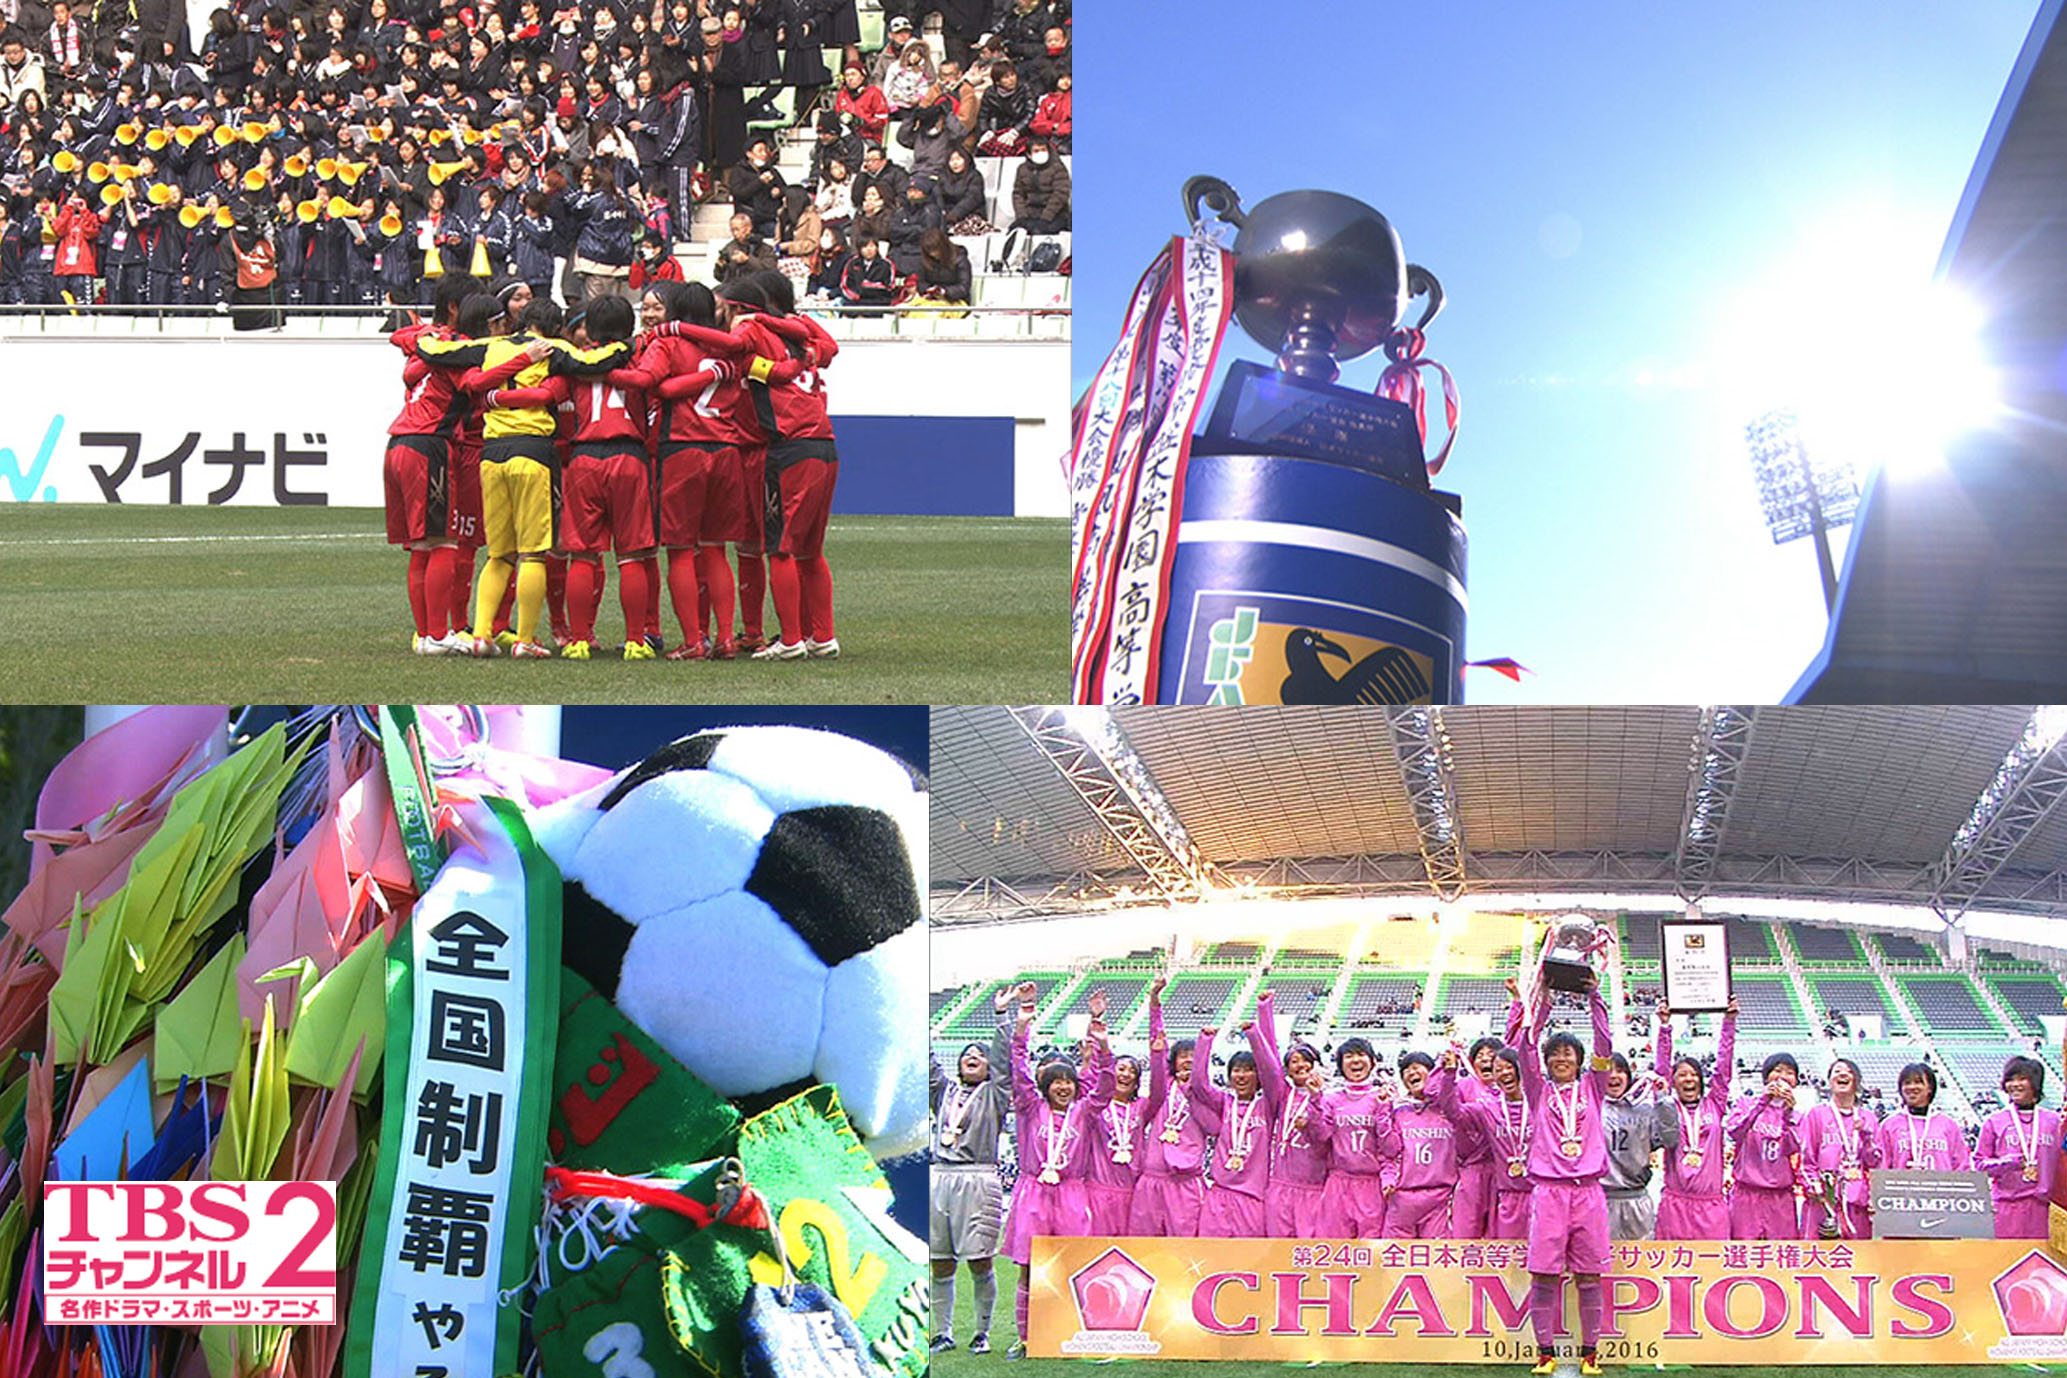 12 30 金 開幕 第25回全日本高校女子サッカー選手権大会 未来のなでしこジャパン たちの美しくも熱き戦いをcs放送 Tbsチャンネル2で 1回戦から生中継を含め連日オンエア 株式会社tbsテレビのプレスリリース